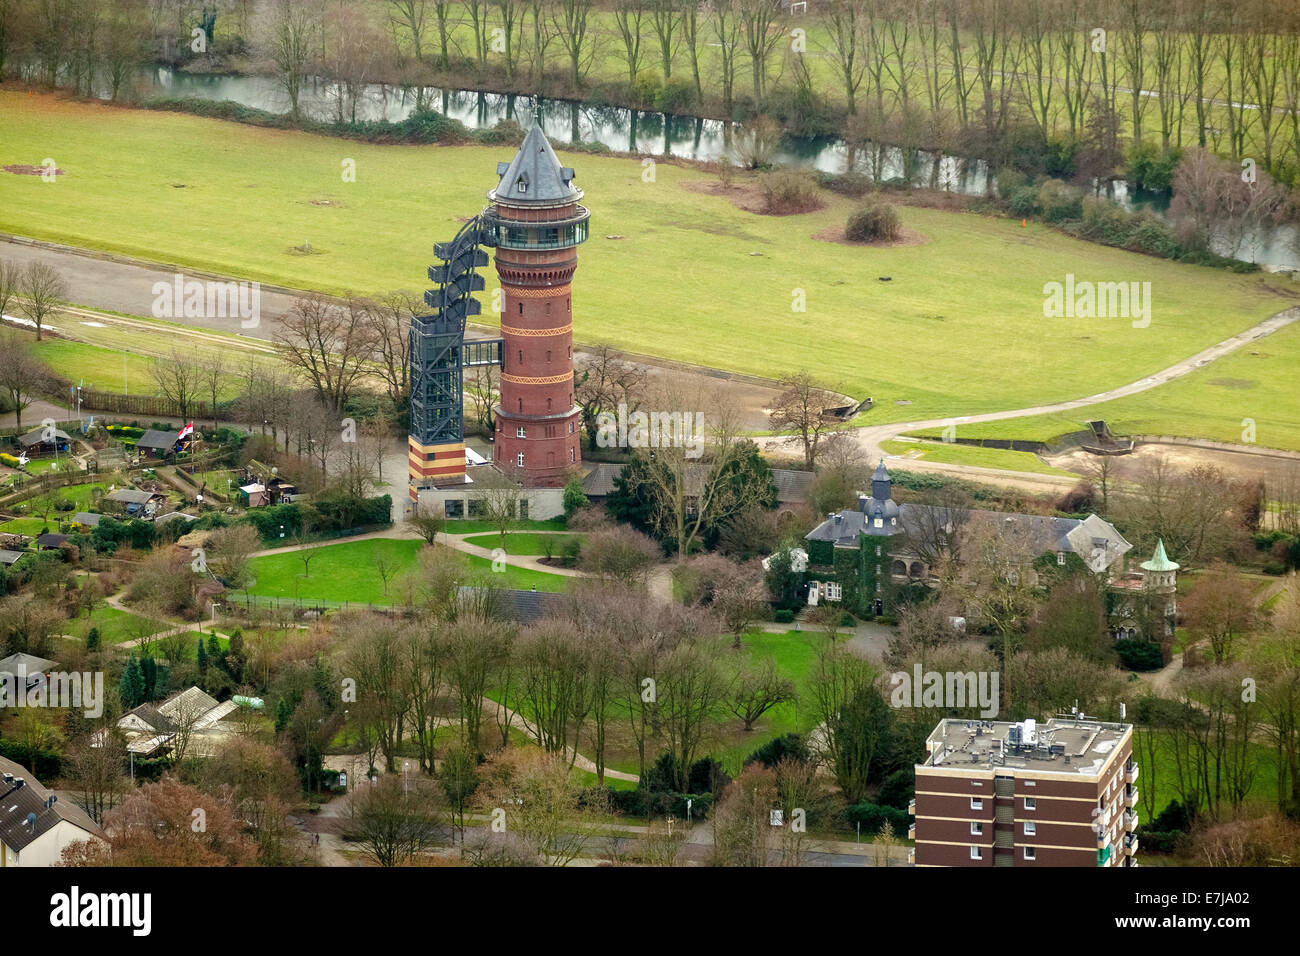 Vista aérea, Styrum Water Tower, Acuario Museo del Agua, el palacio Schloss Styrum Castillo, Mülheim an der Ruhr, área de Ruhr Foto de stock